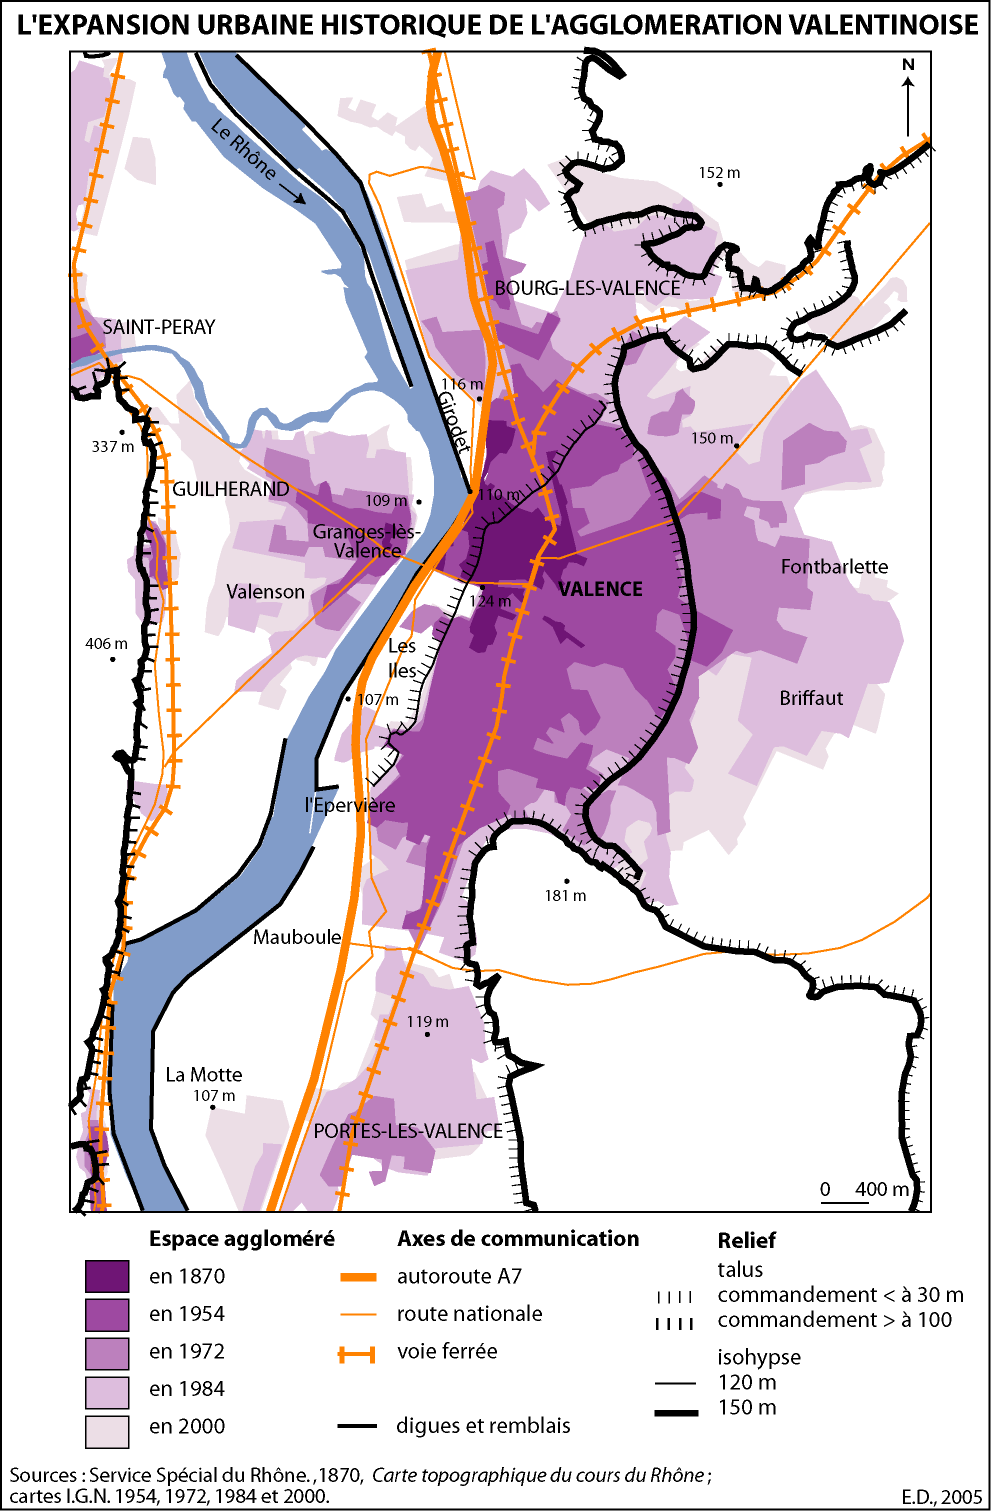 Figure 42. L’expansion urbaine historique de l’agglomération valentinoise